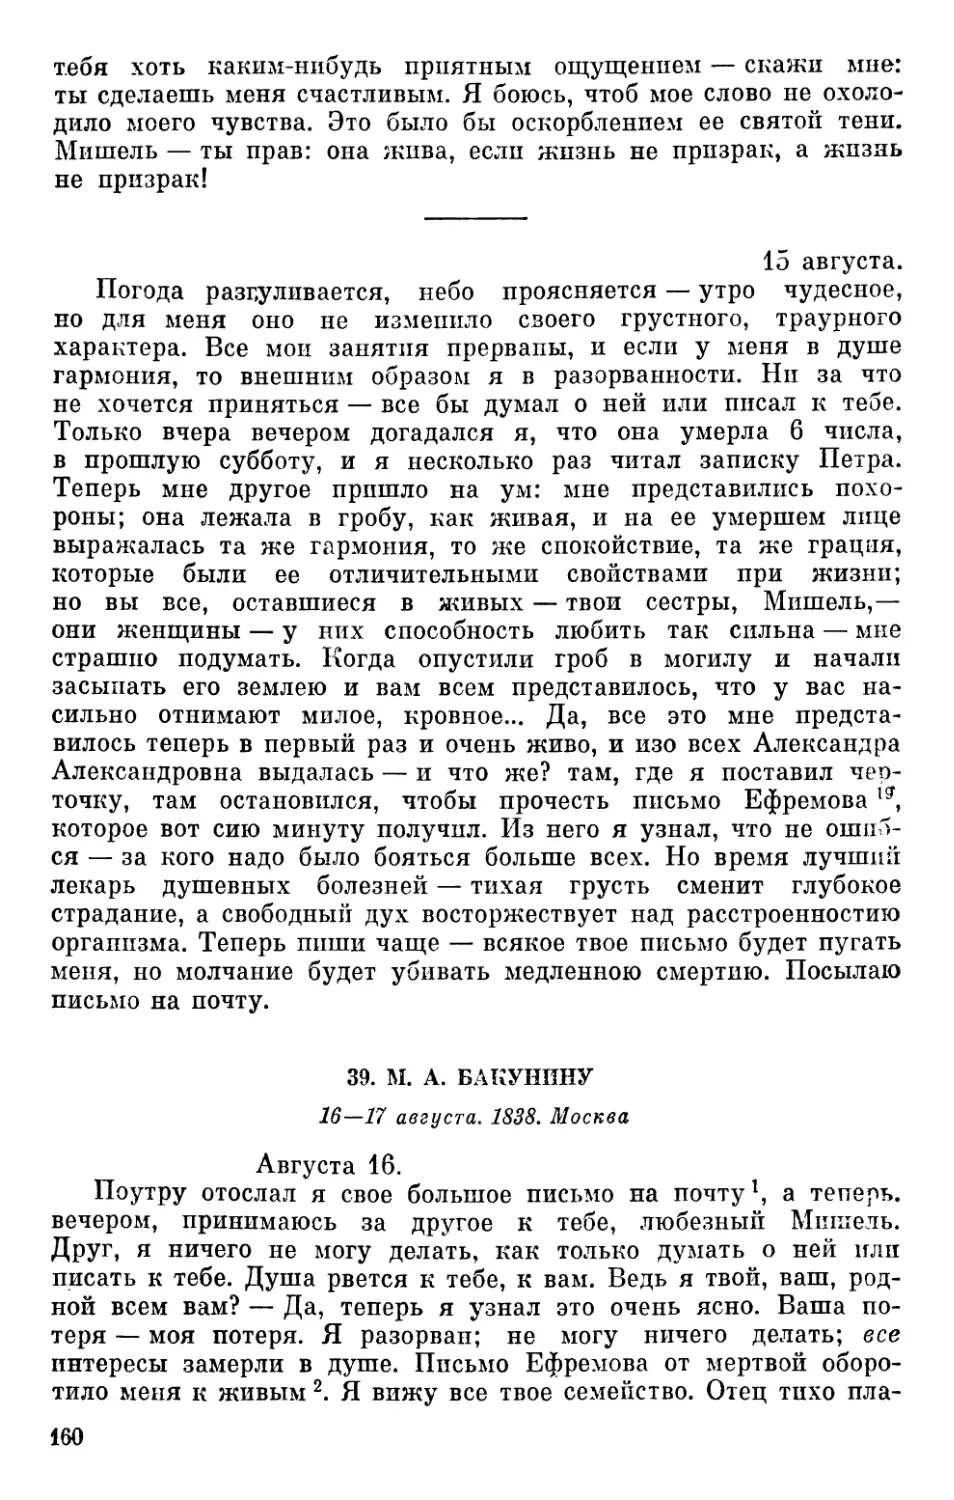 39. М. А. Бакунину. 16—17 августа 1838